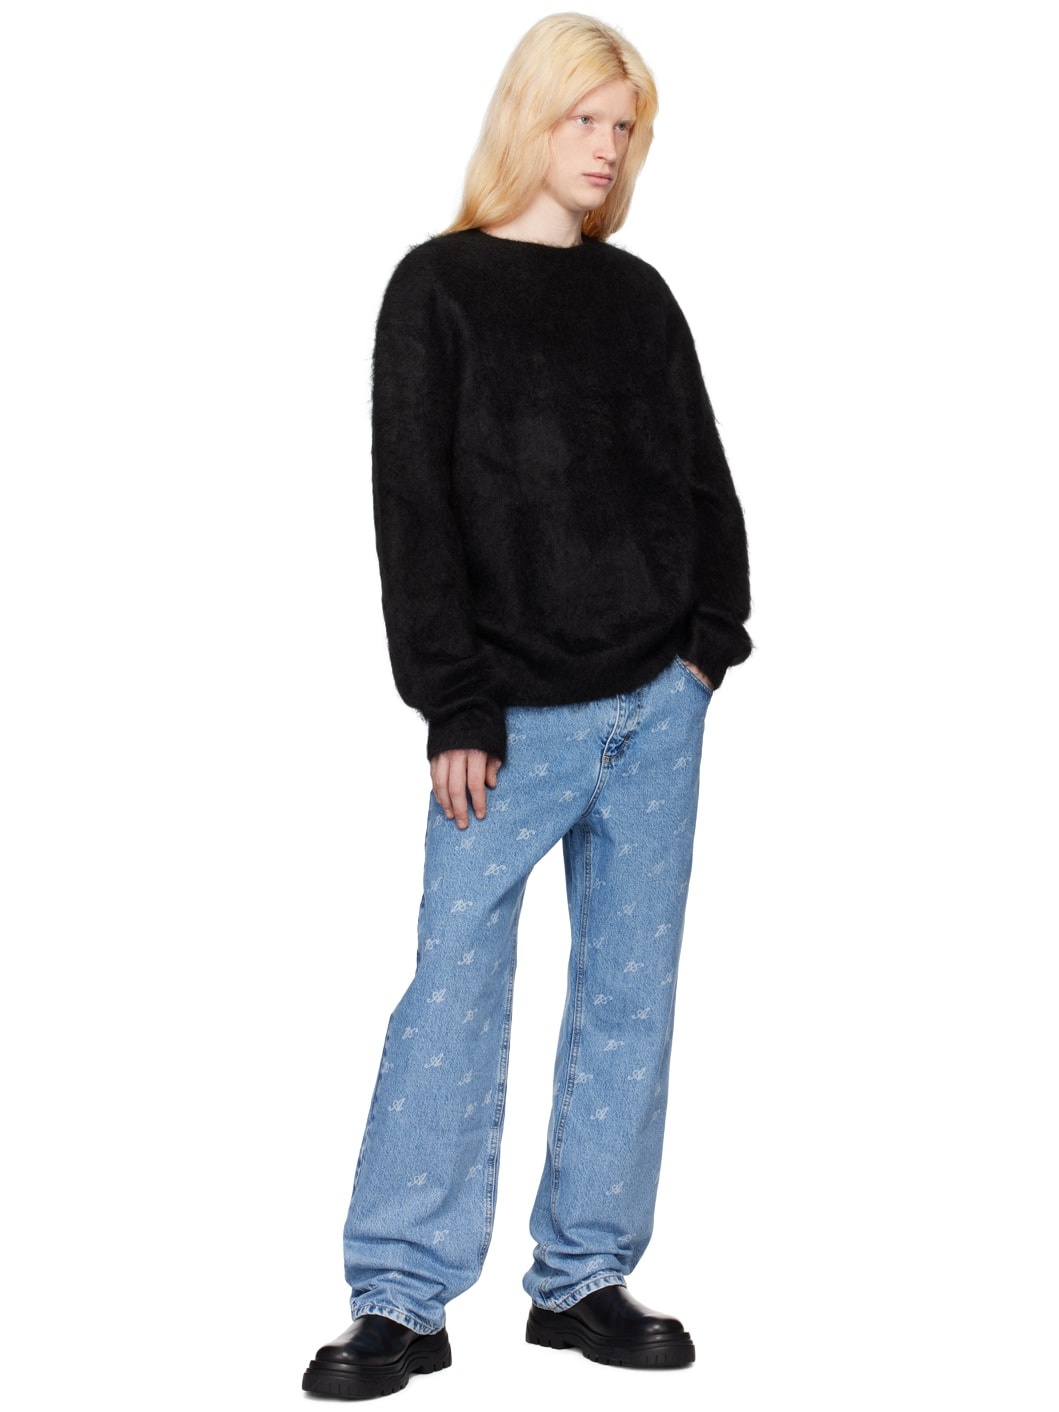 Black Primary Sweater - 4